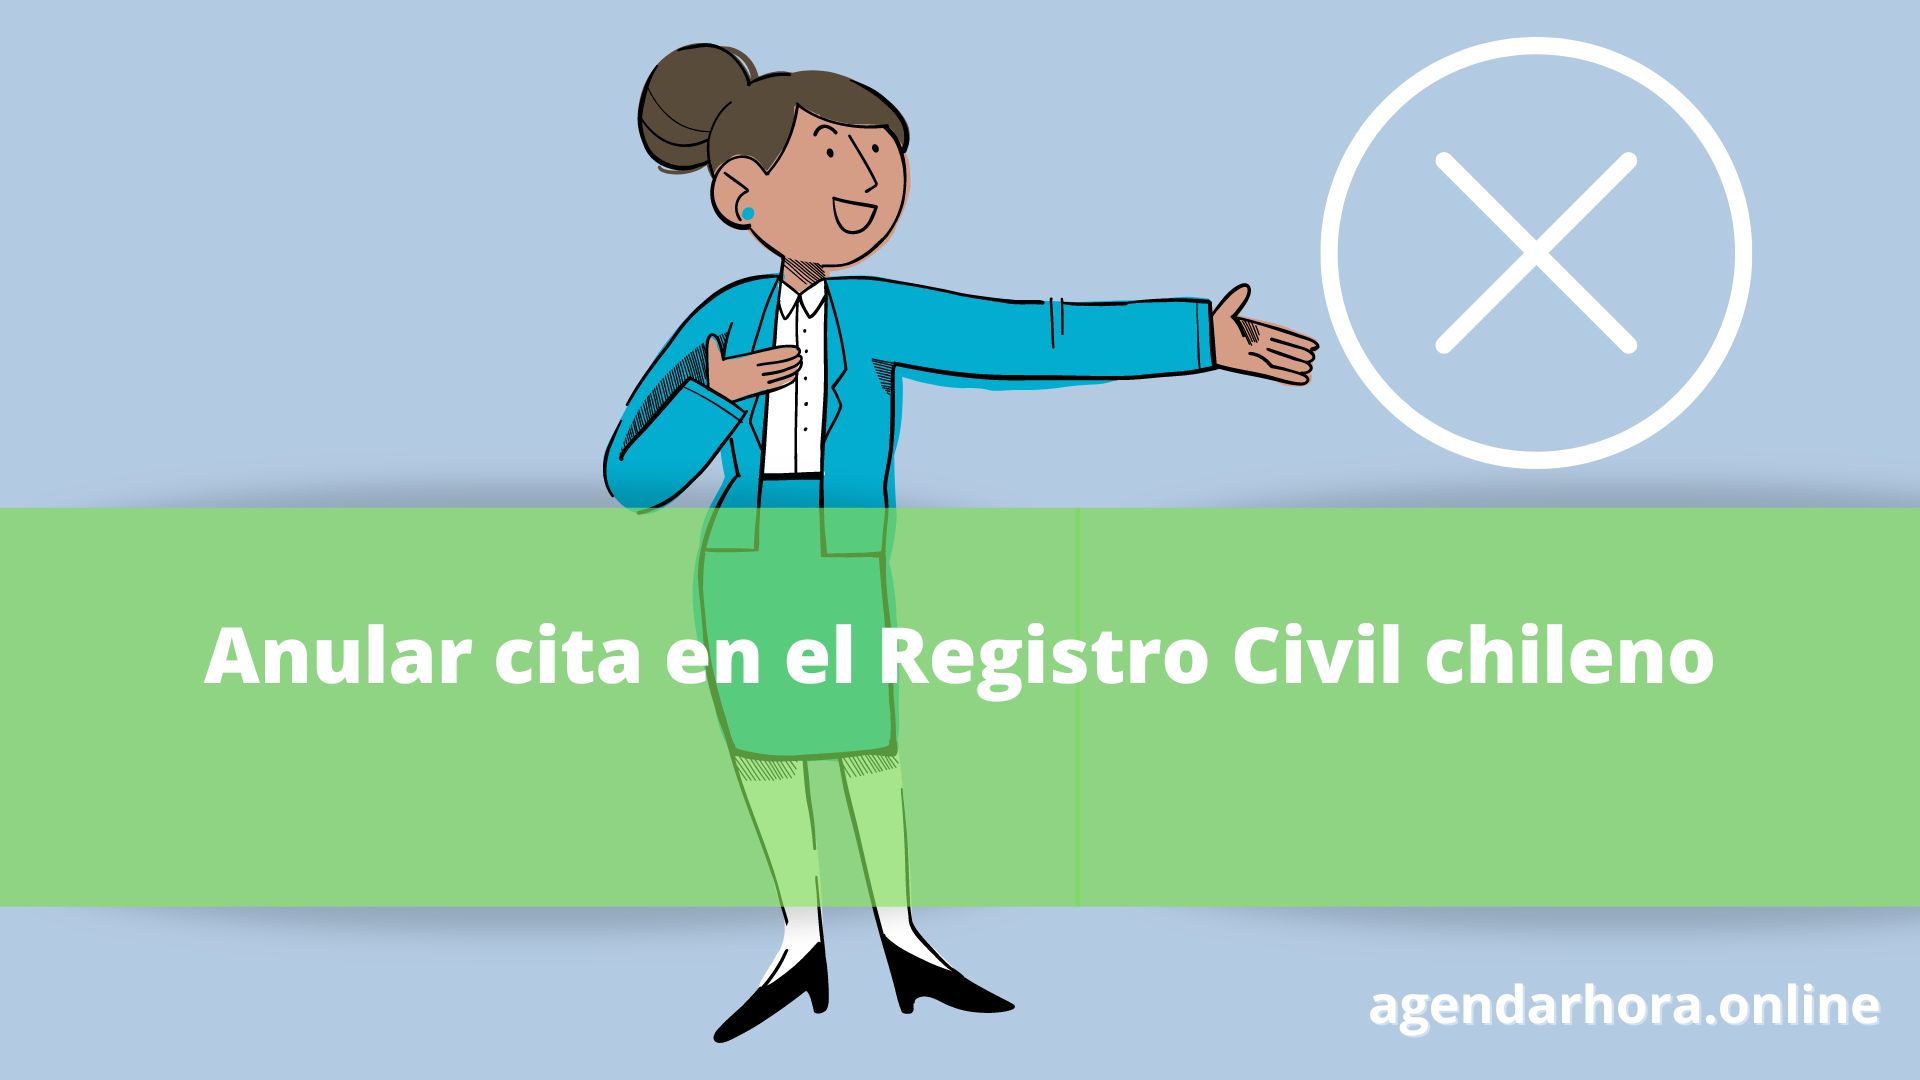 Anular hora en el Registro Civil chileno